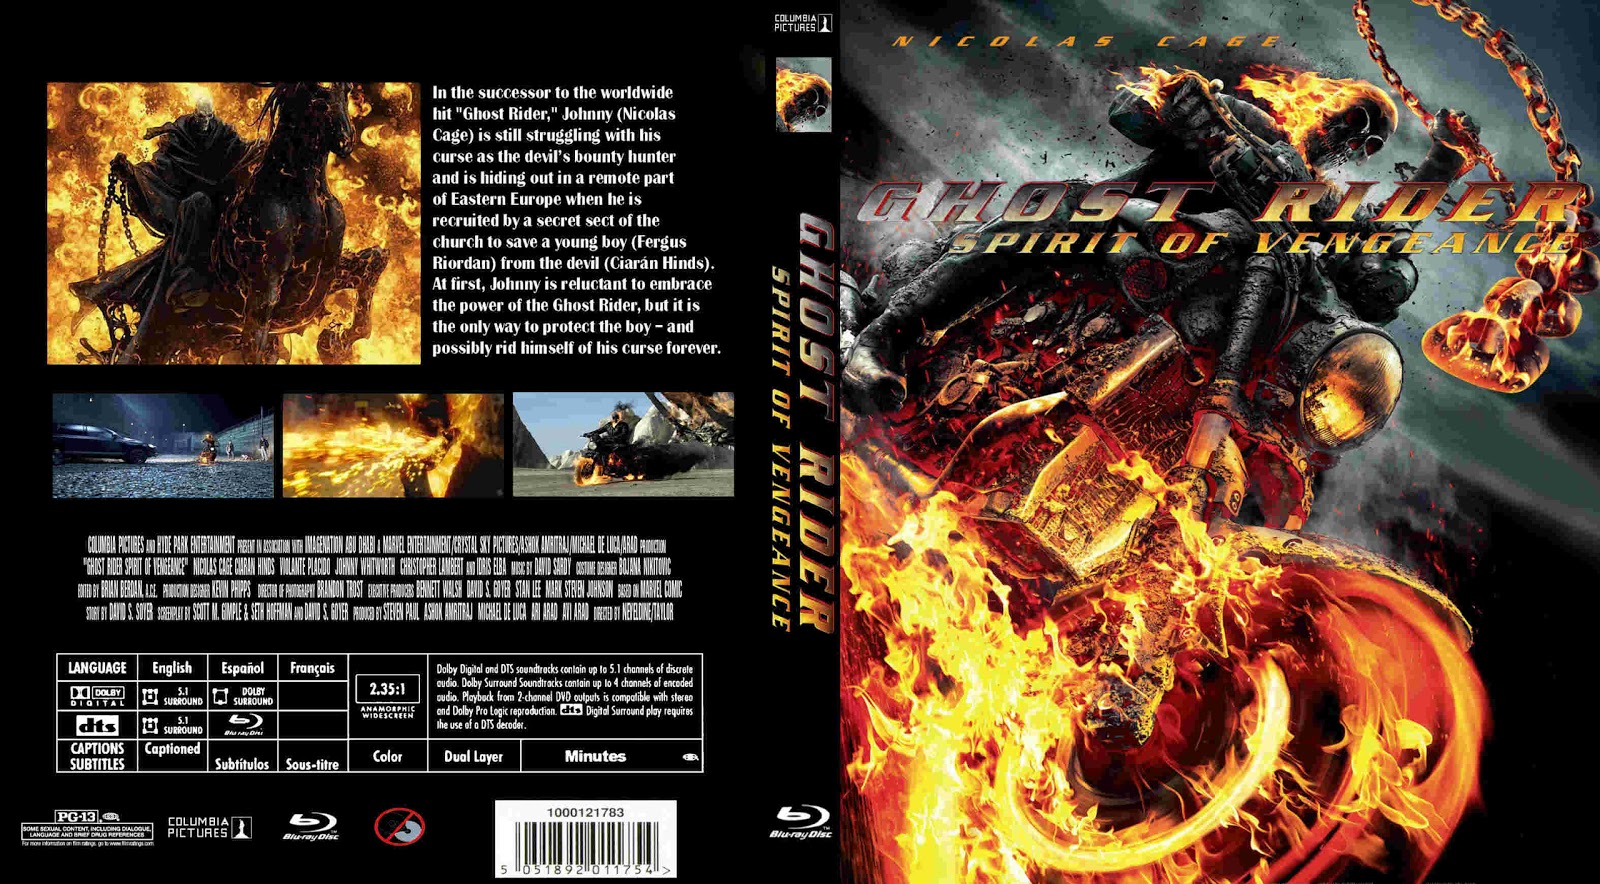 Ghost Rider Spirit Of Vengeance Dvd Cover